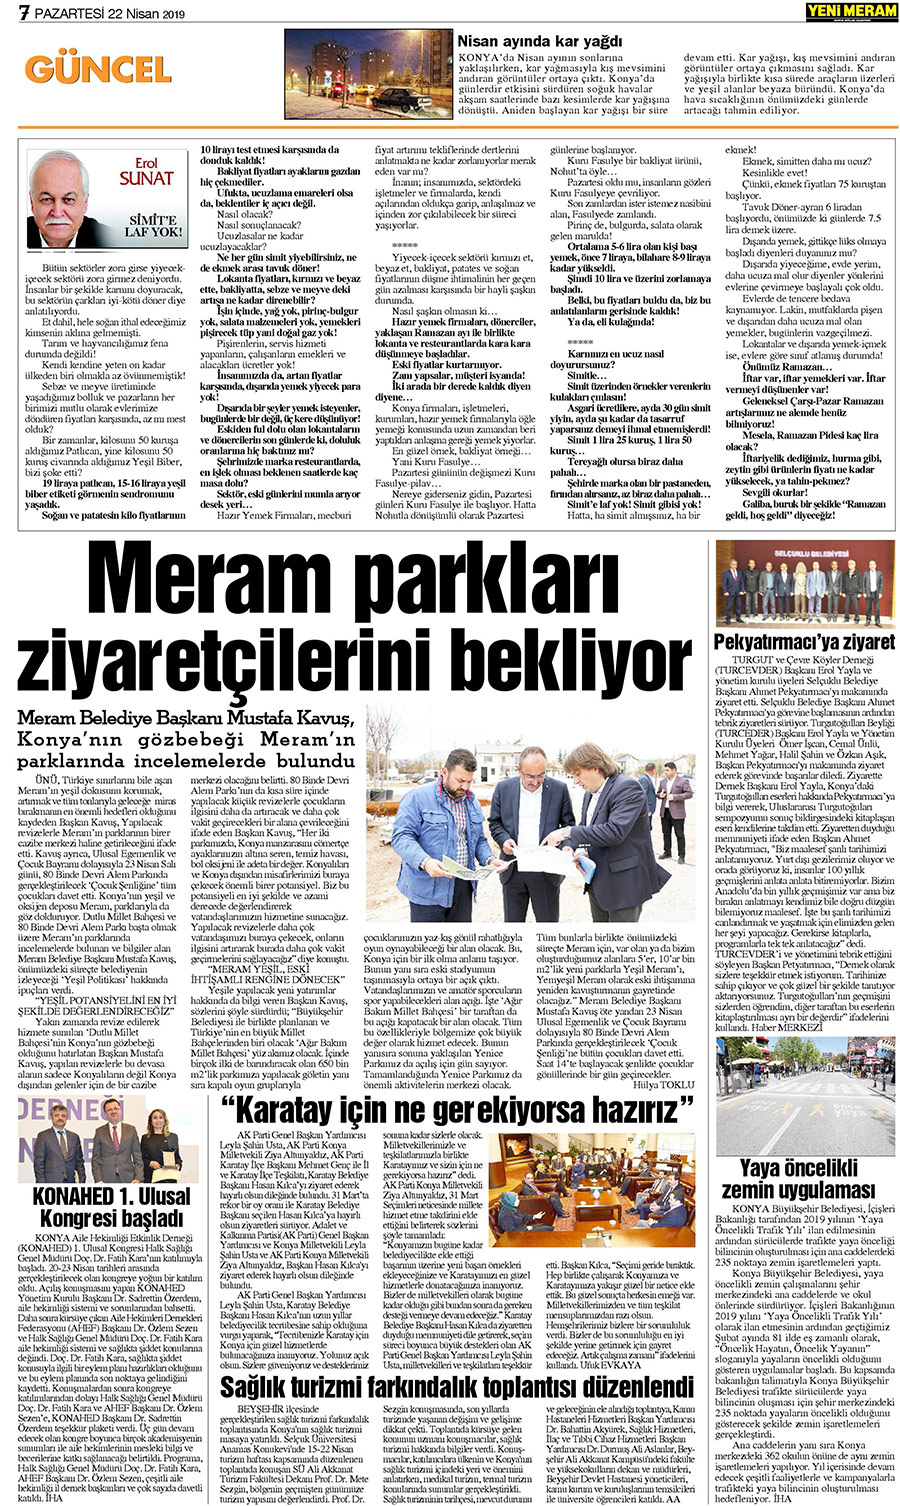 22 Nisan 2019 Yeni Meram Gazetesi